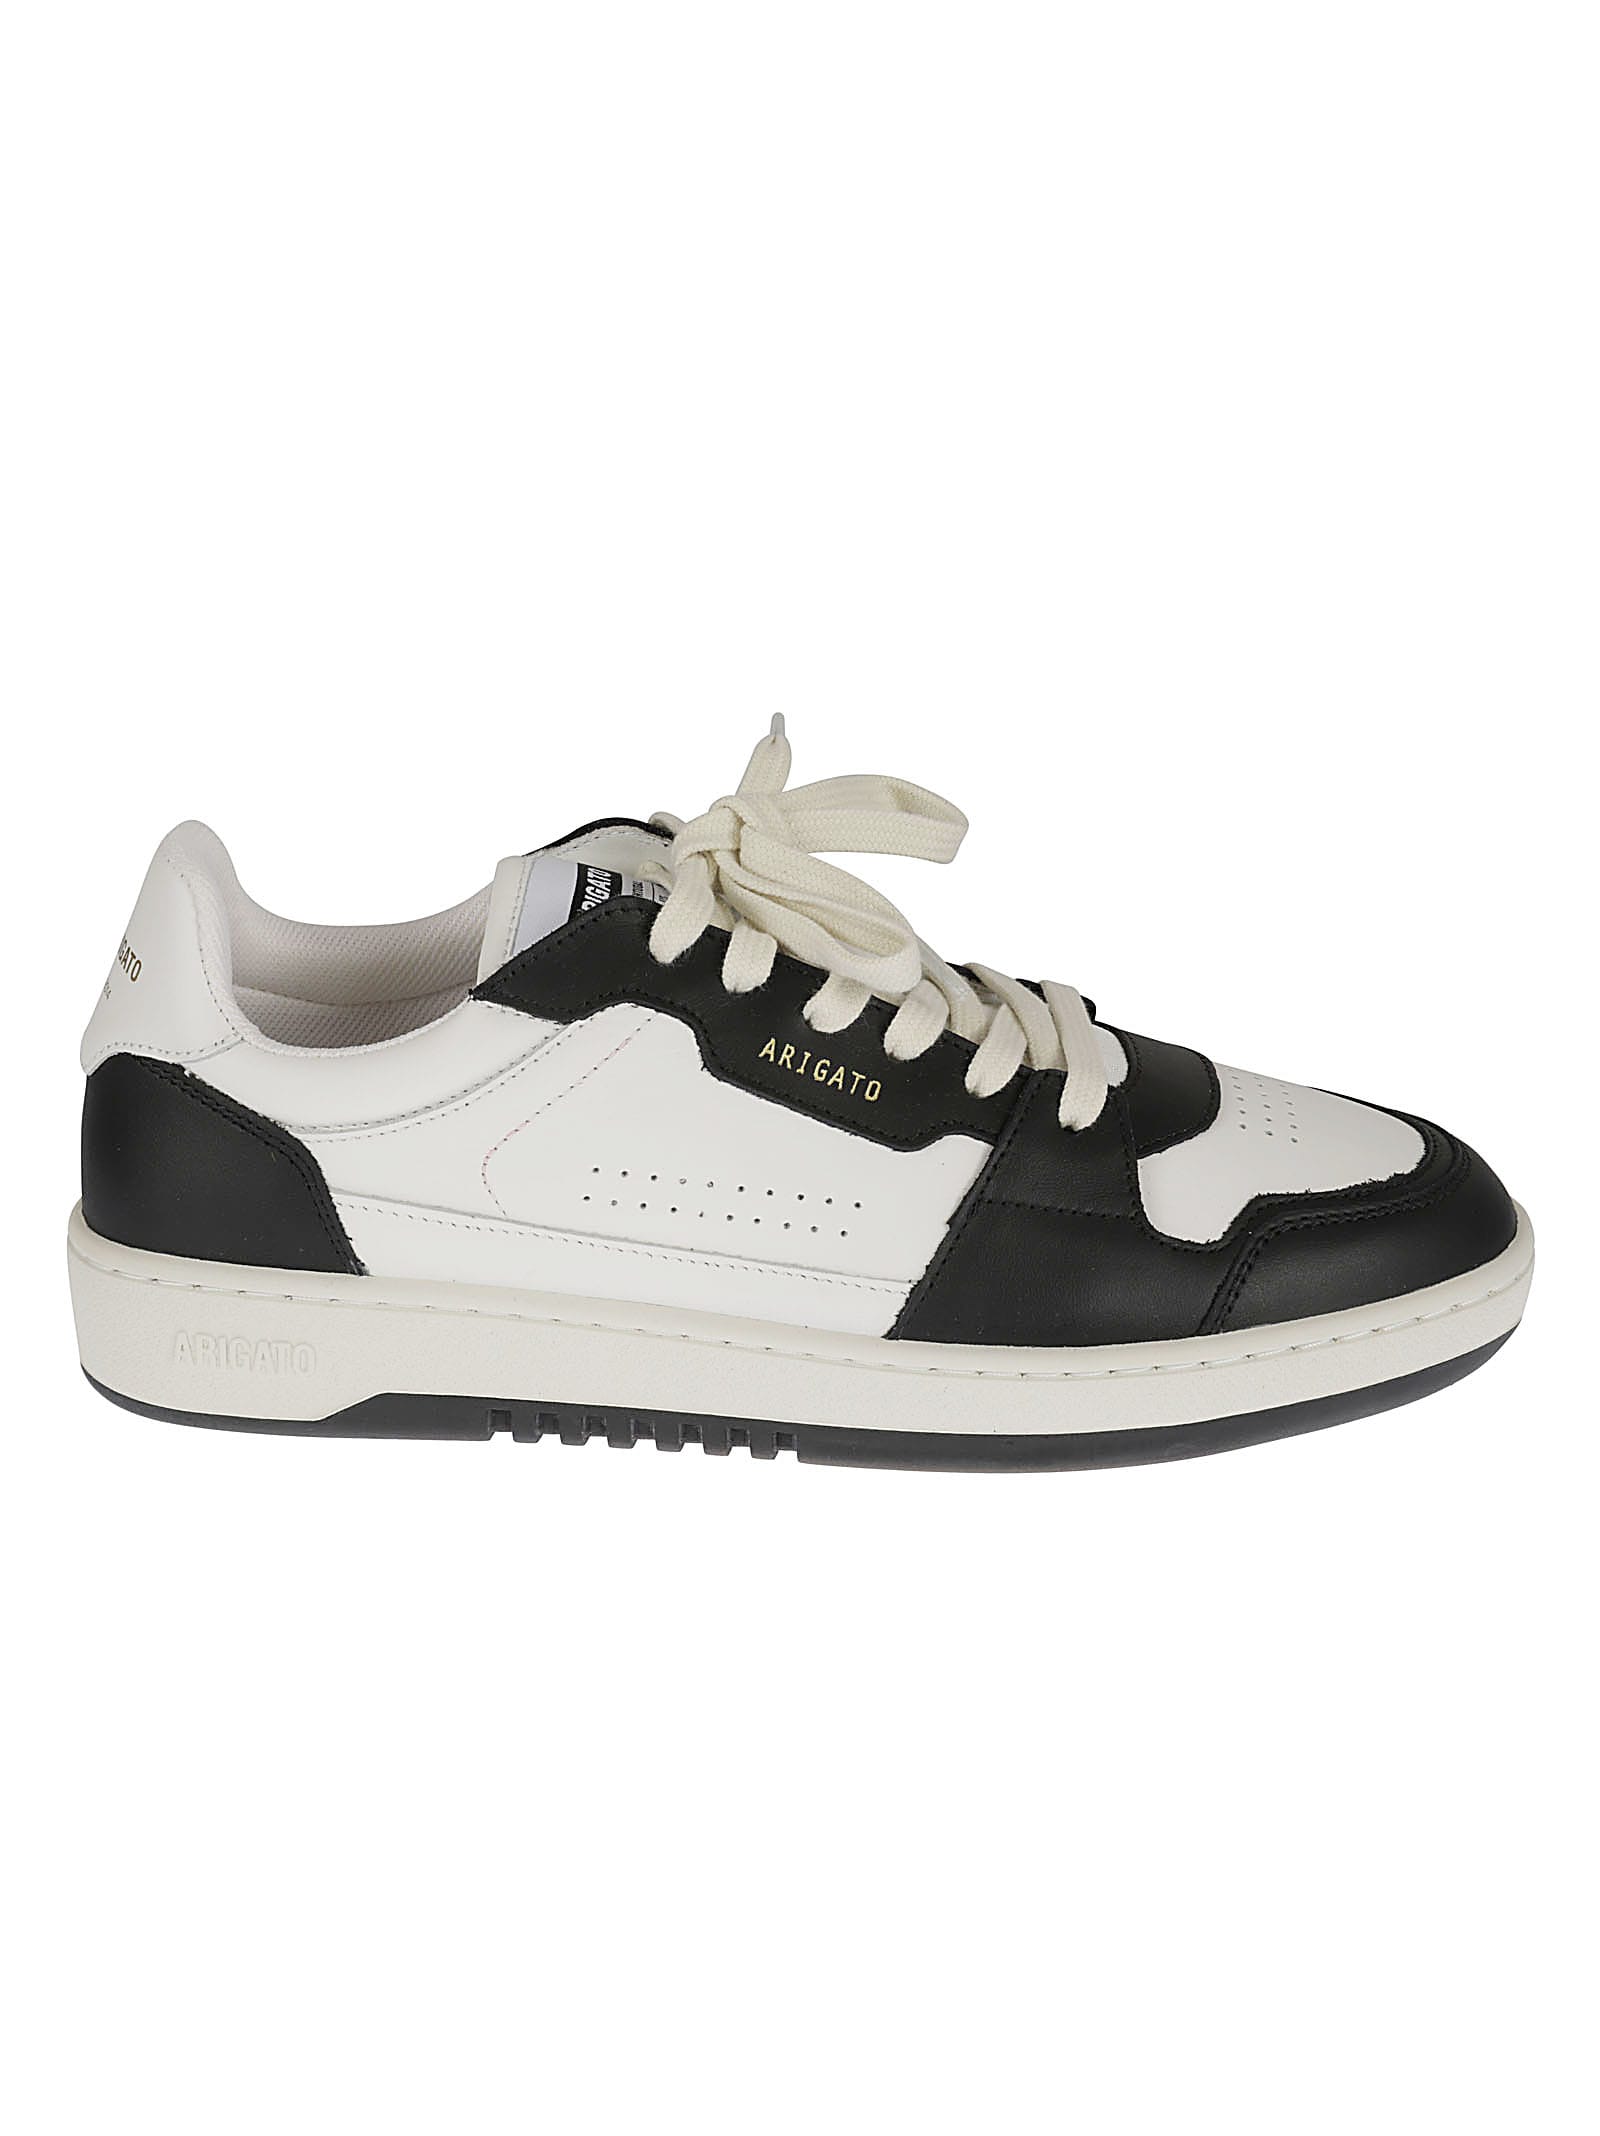 Shop Axel Arigato Dice Lo Sneakers In White/black